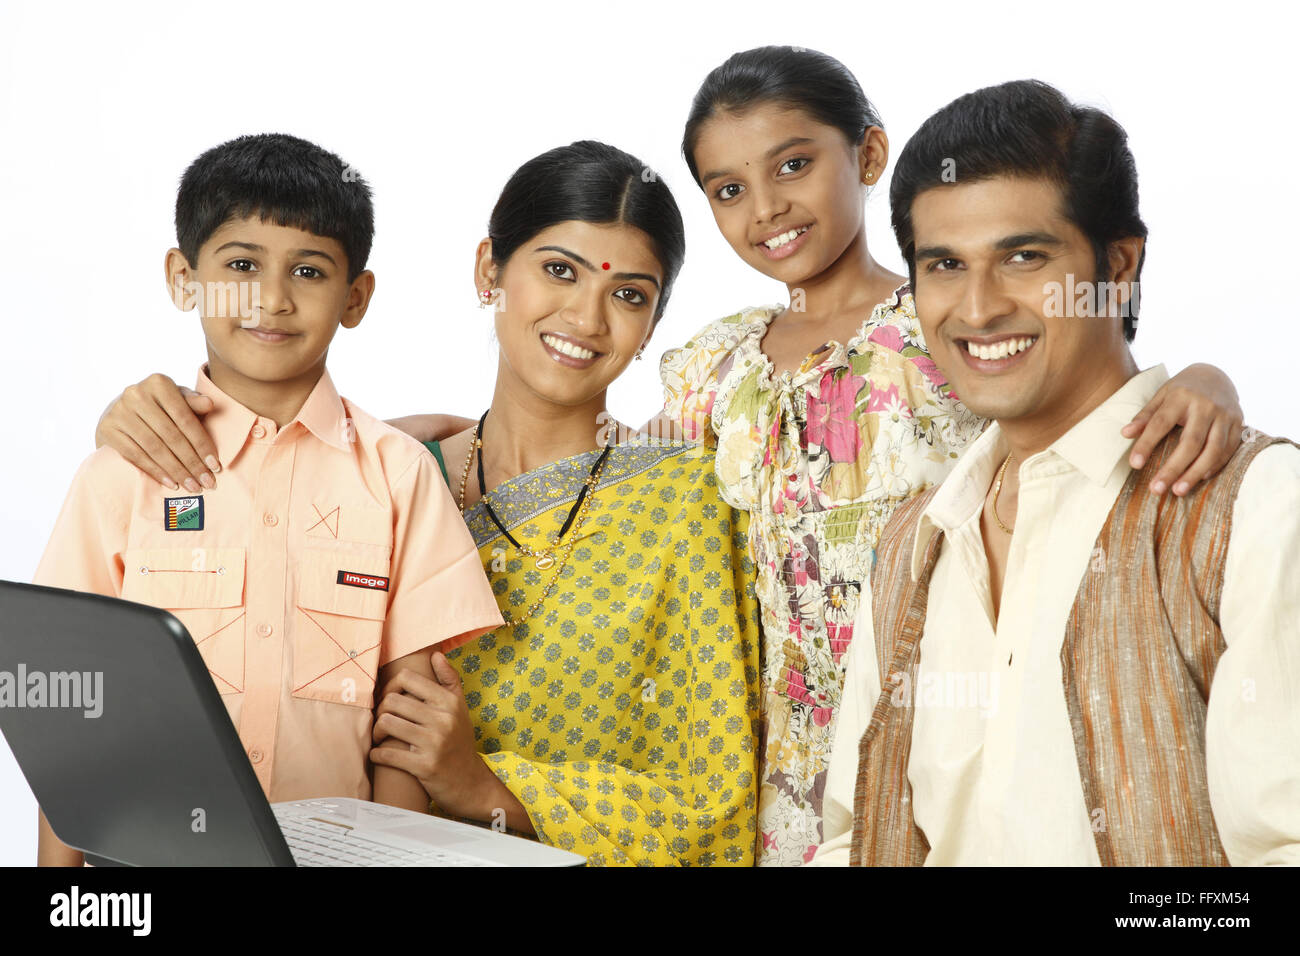 Famille rurale riche avec un ordinateur portable sur le tableau M.# 743A, 743B, 743C, 743D Banque D'Images